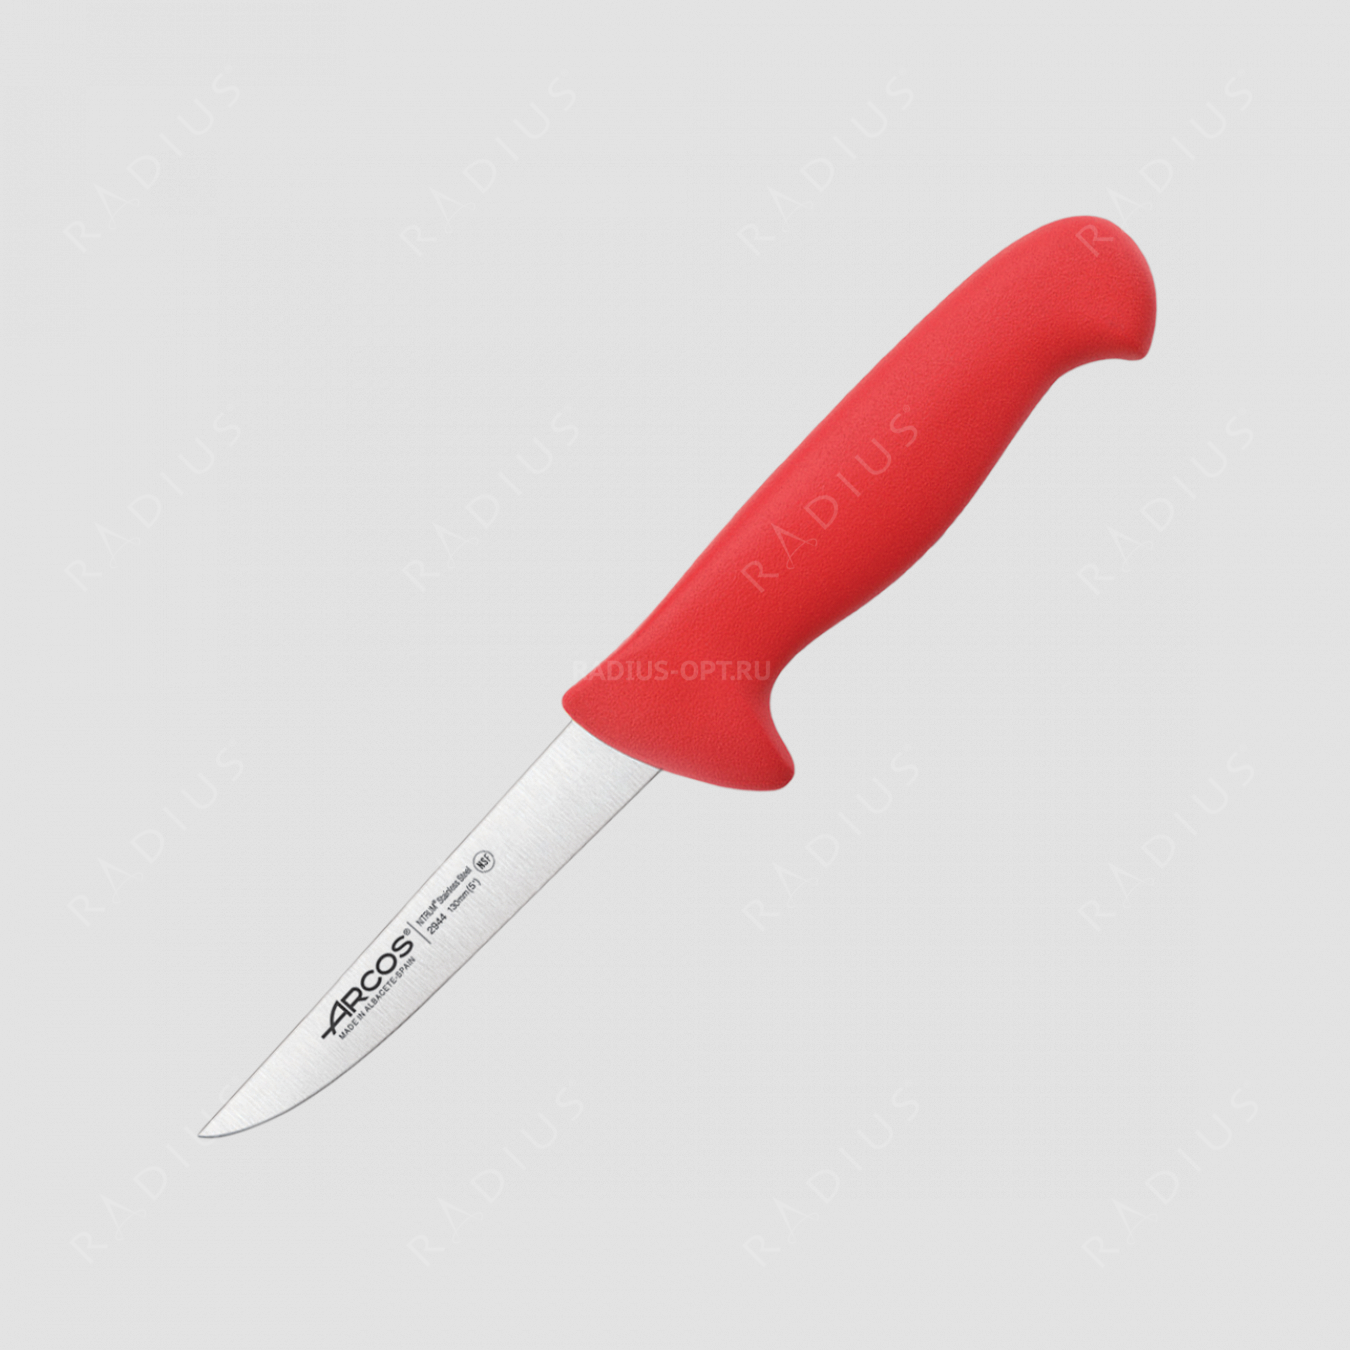 Нож кухонный обвалочный 13 см, рукоять - красная, серия 2900, ARCOS, Испания